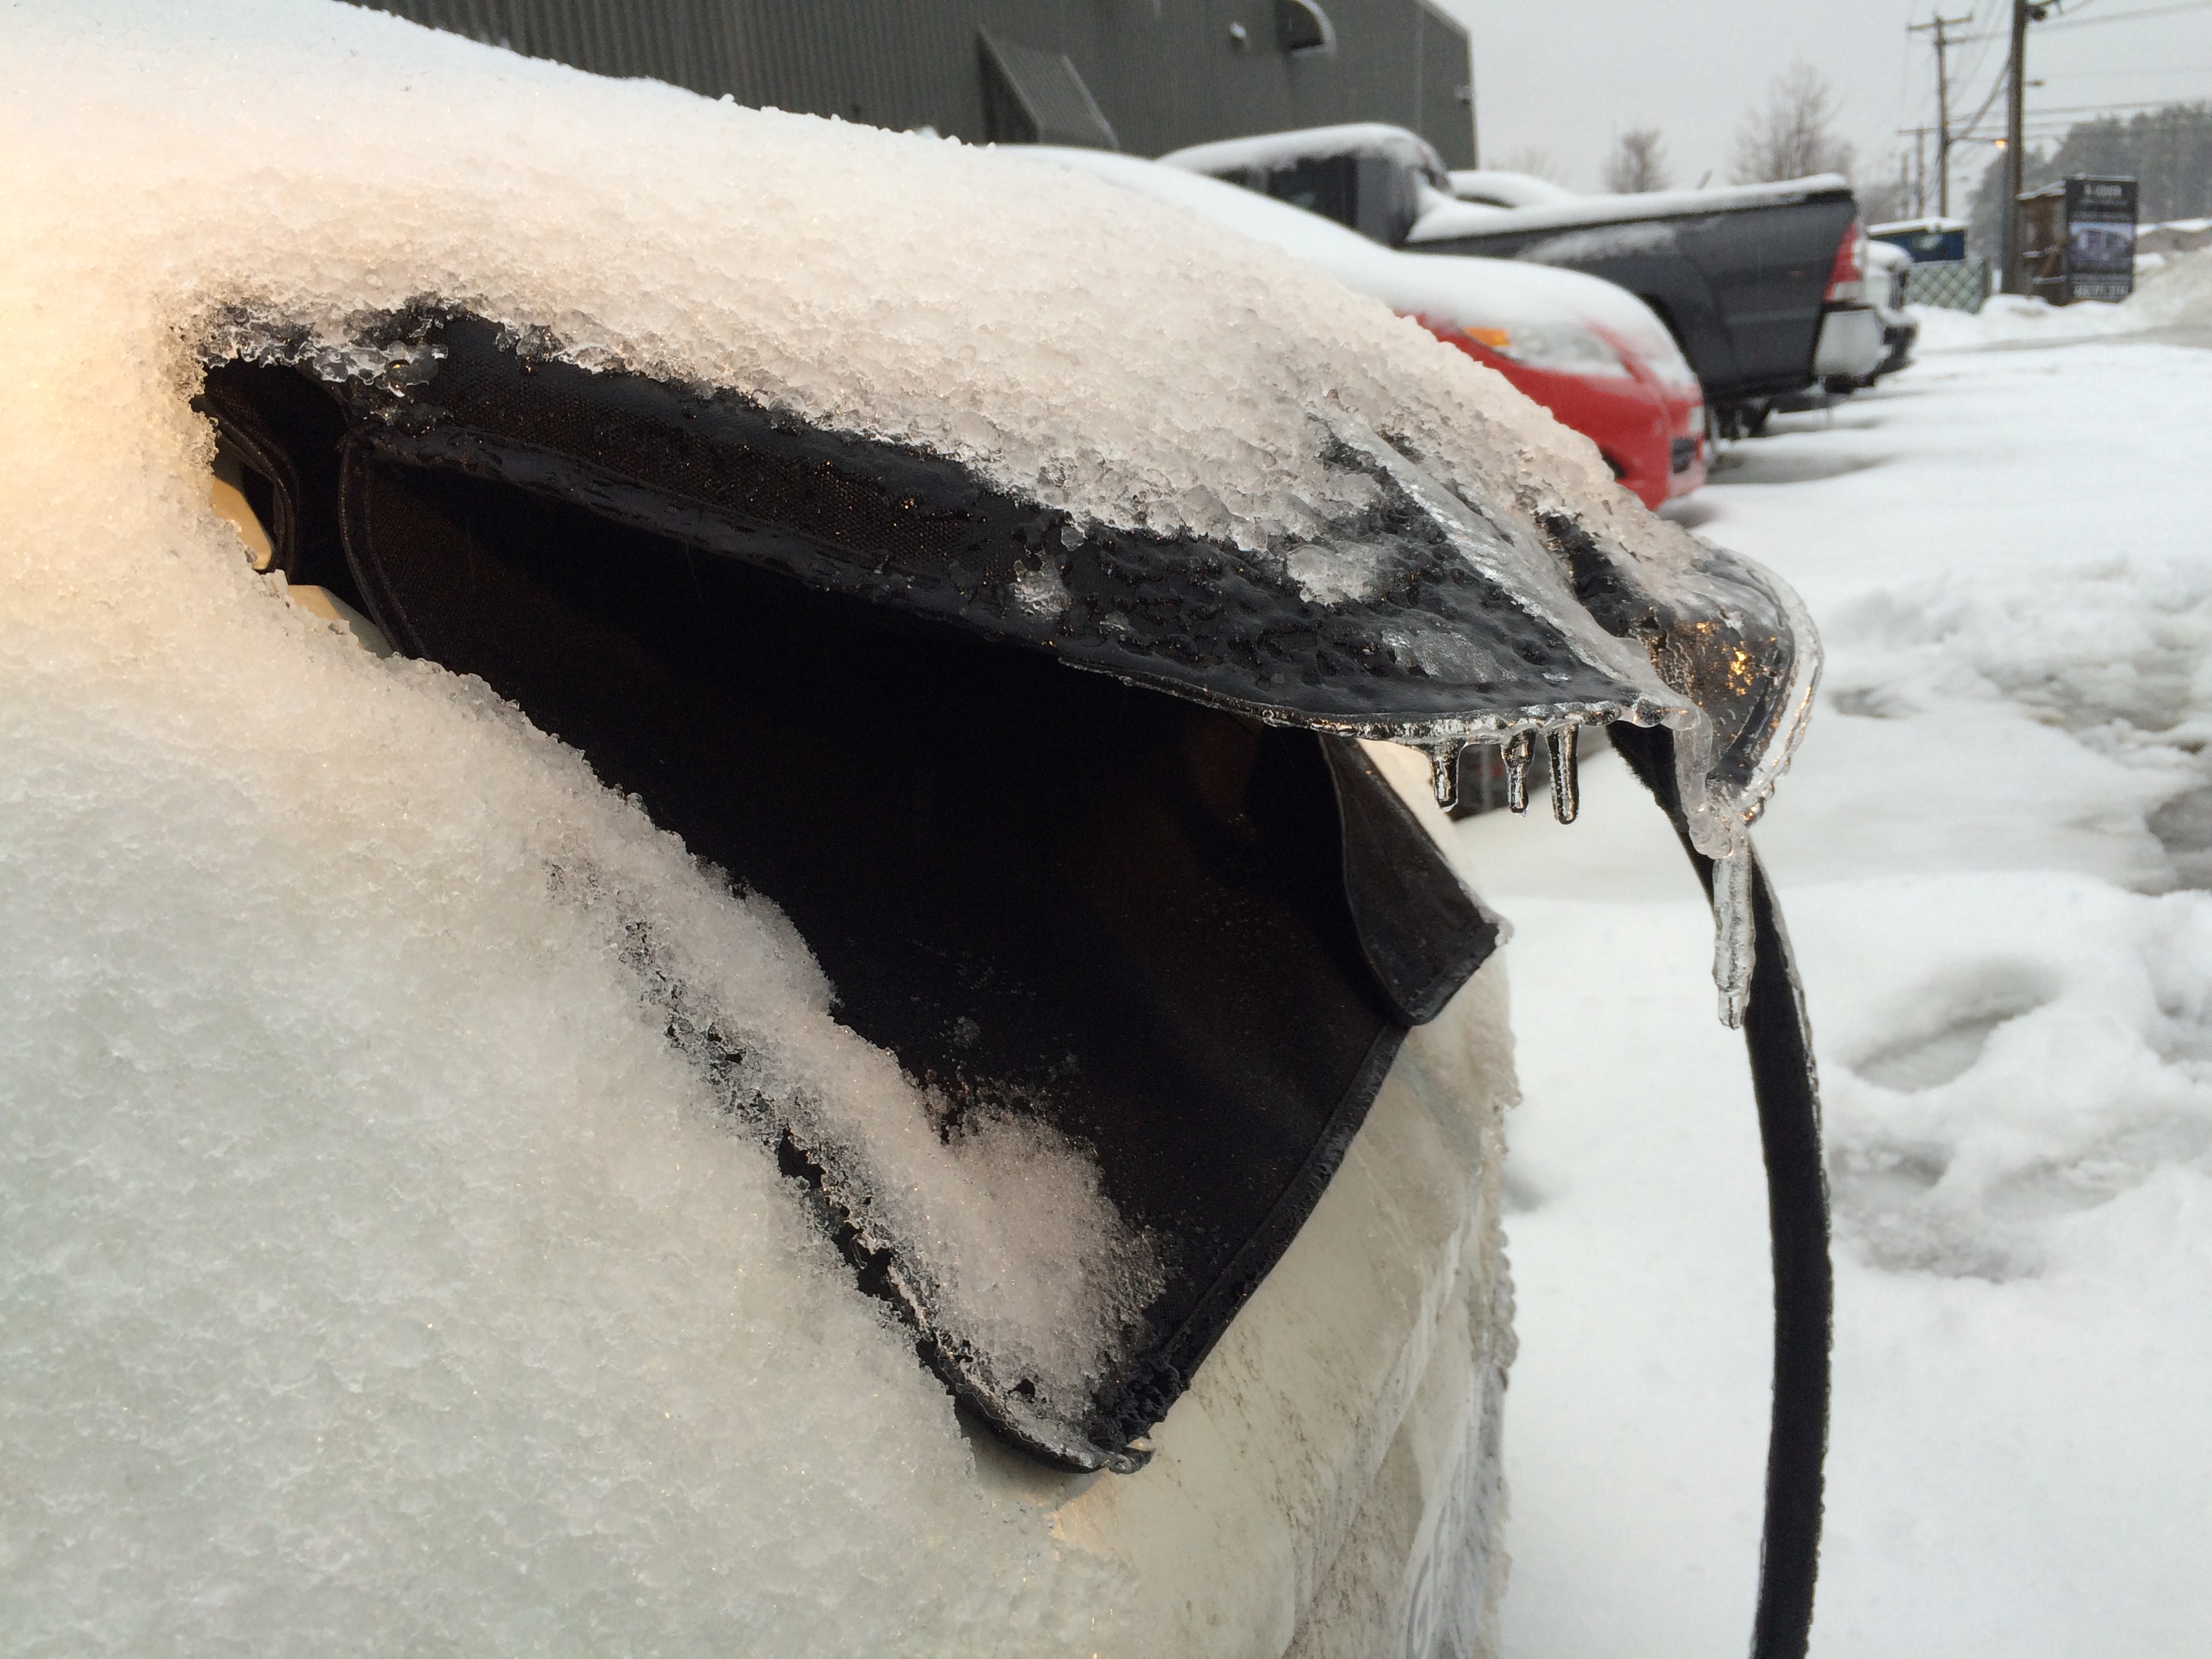 housse pour trappe de recharge de Nissan LEAF - protège le port de recharge de la plie verglacante, du verglas et de la neige l'hiver